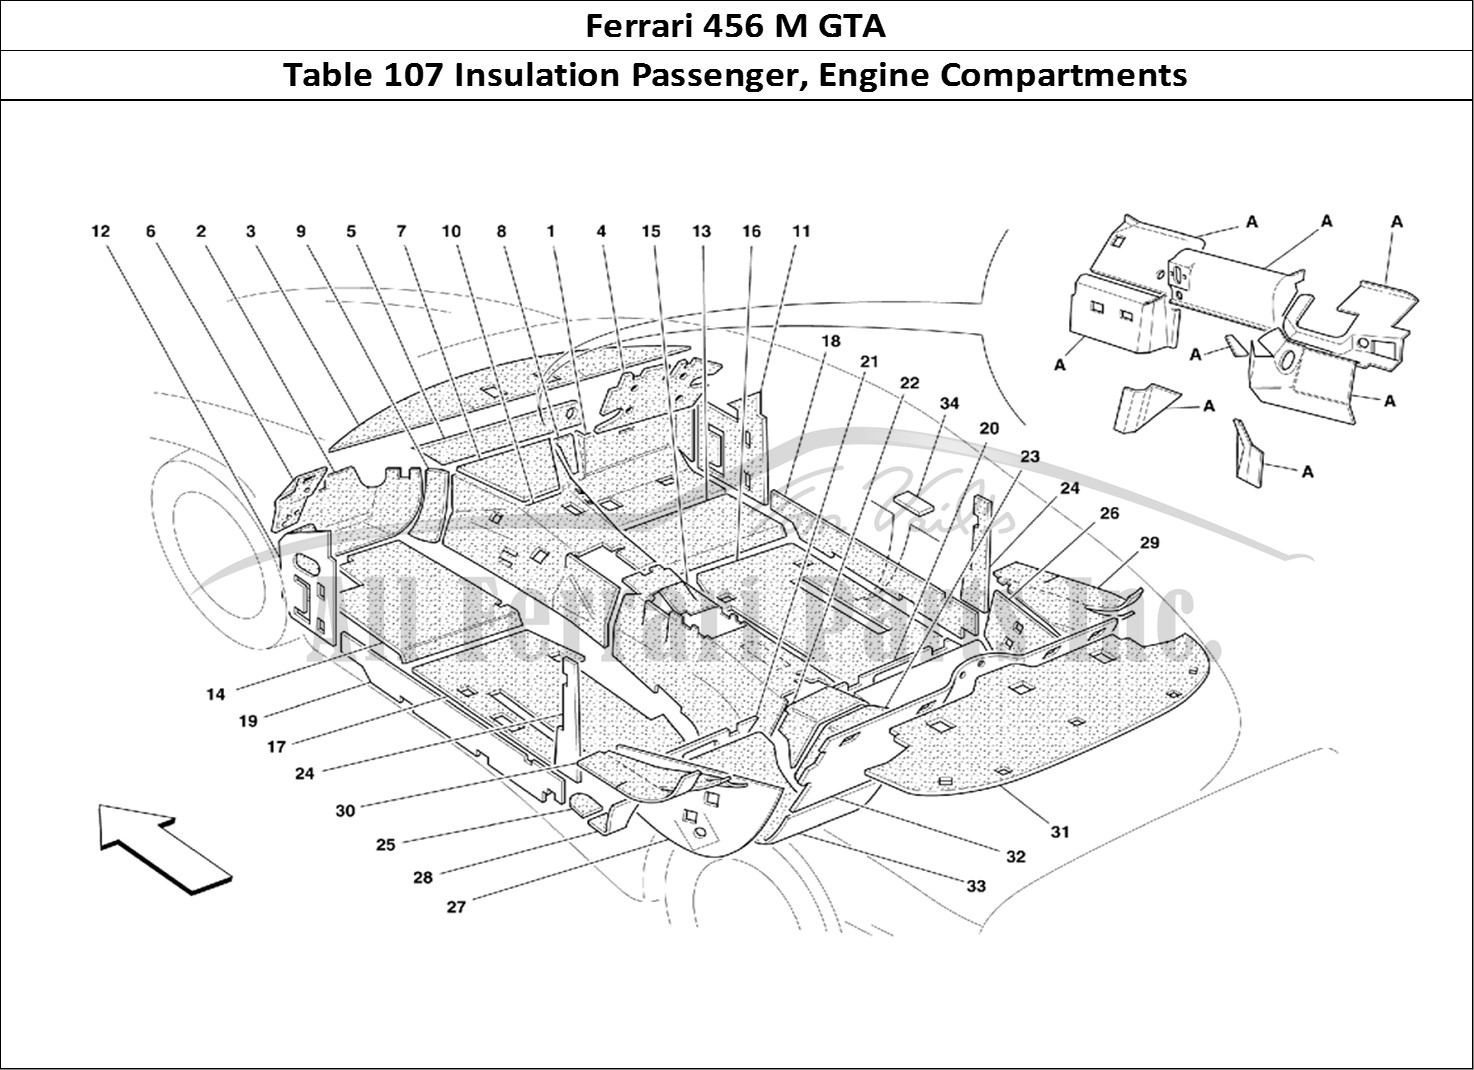 Ferrari Parts Ferrari 456 M GT Page 107 Passengers Compart. and E